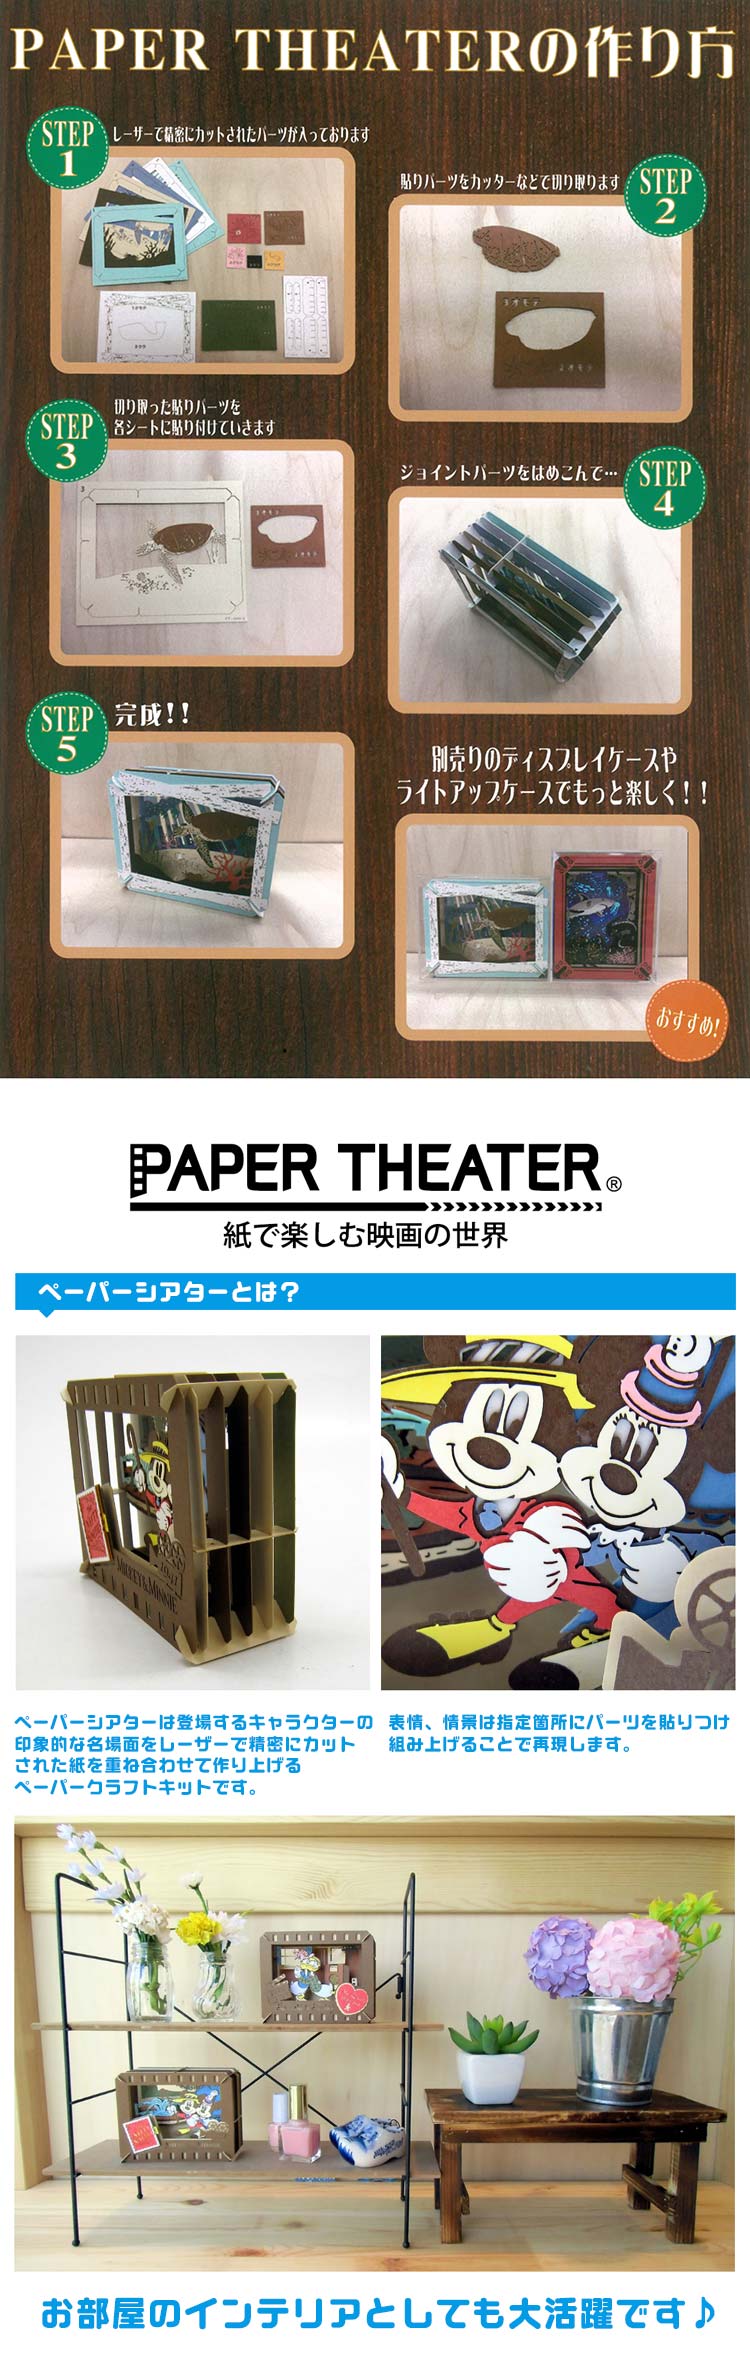 Paper Theater - 龍珠 Go Go樂園